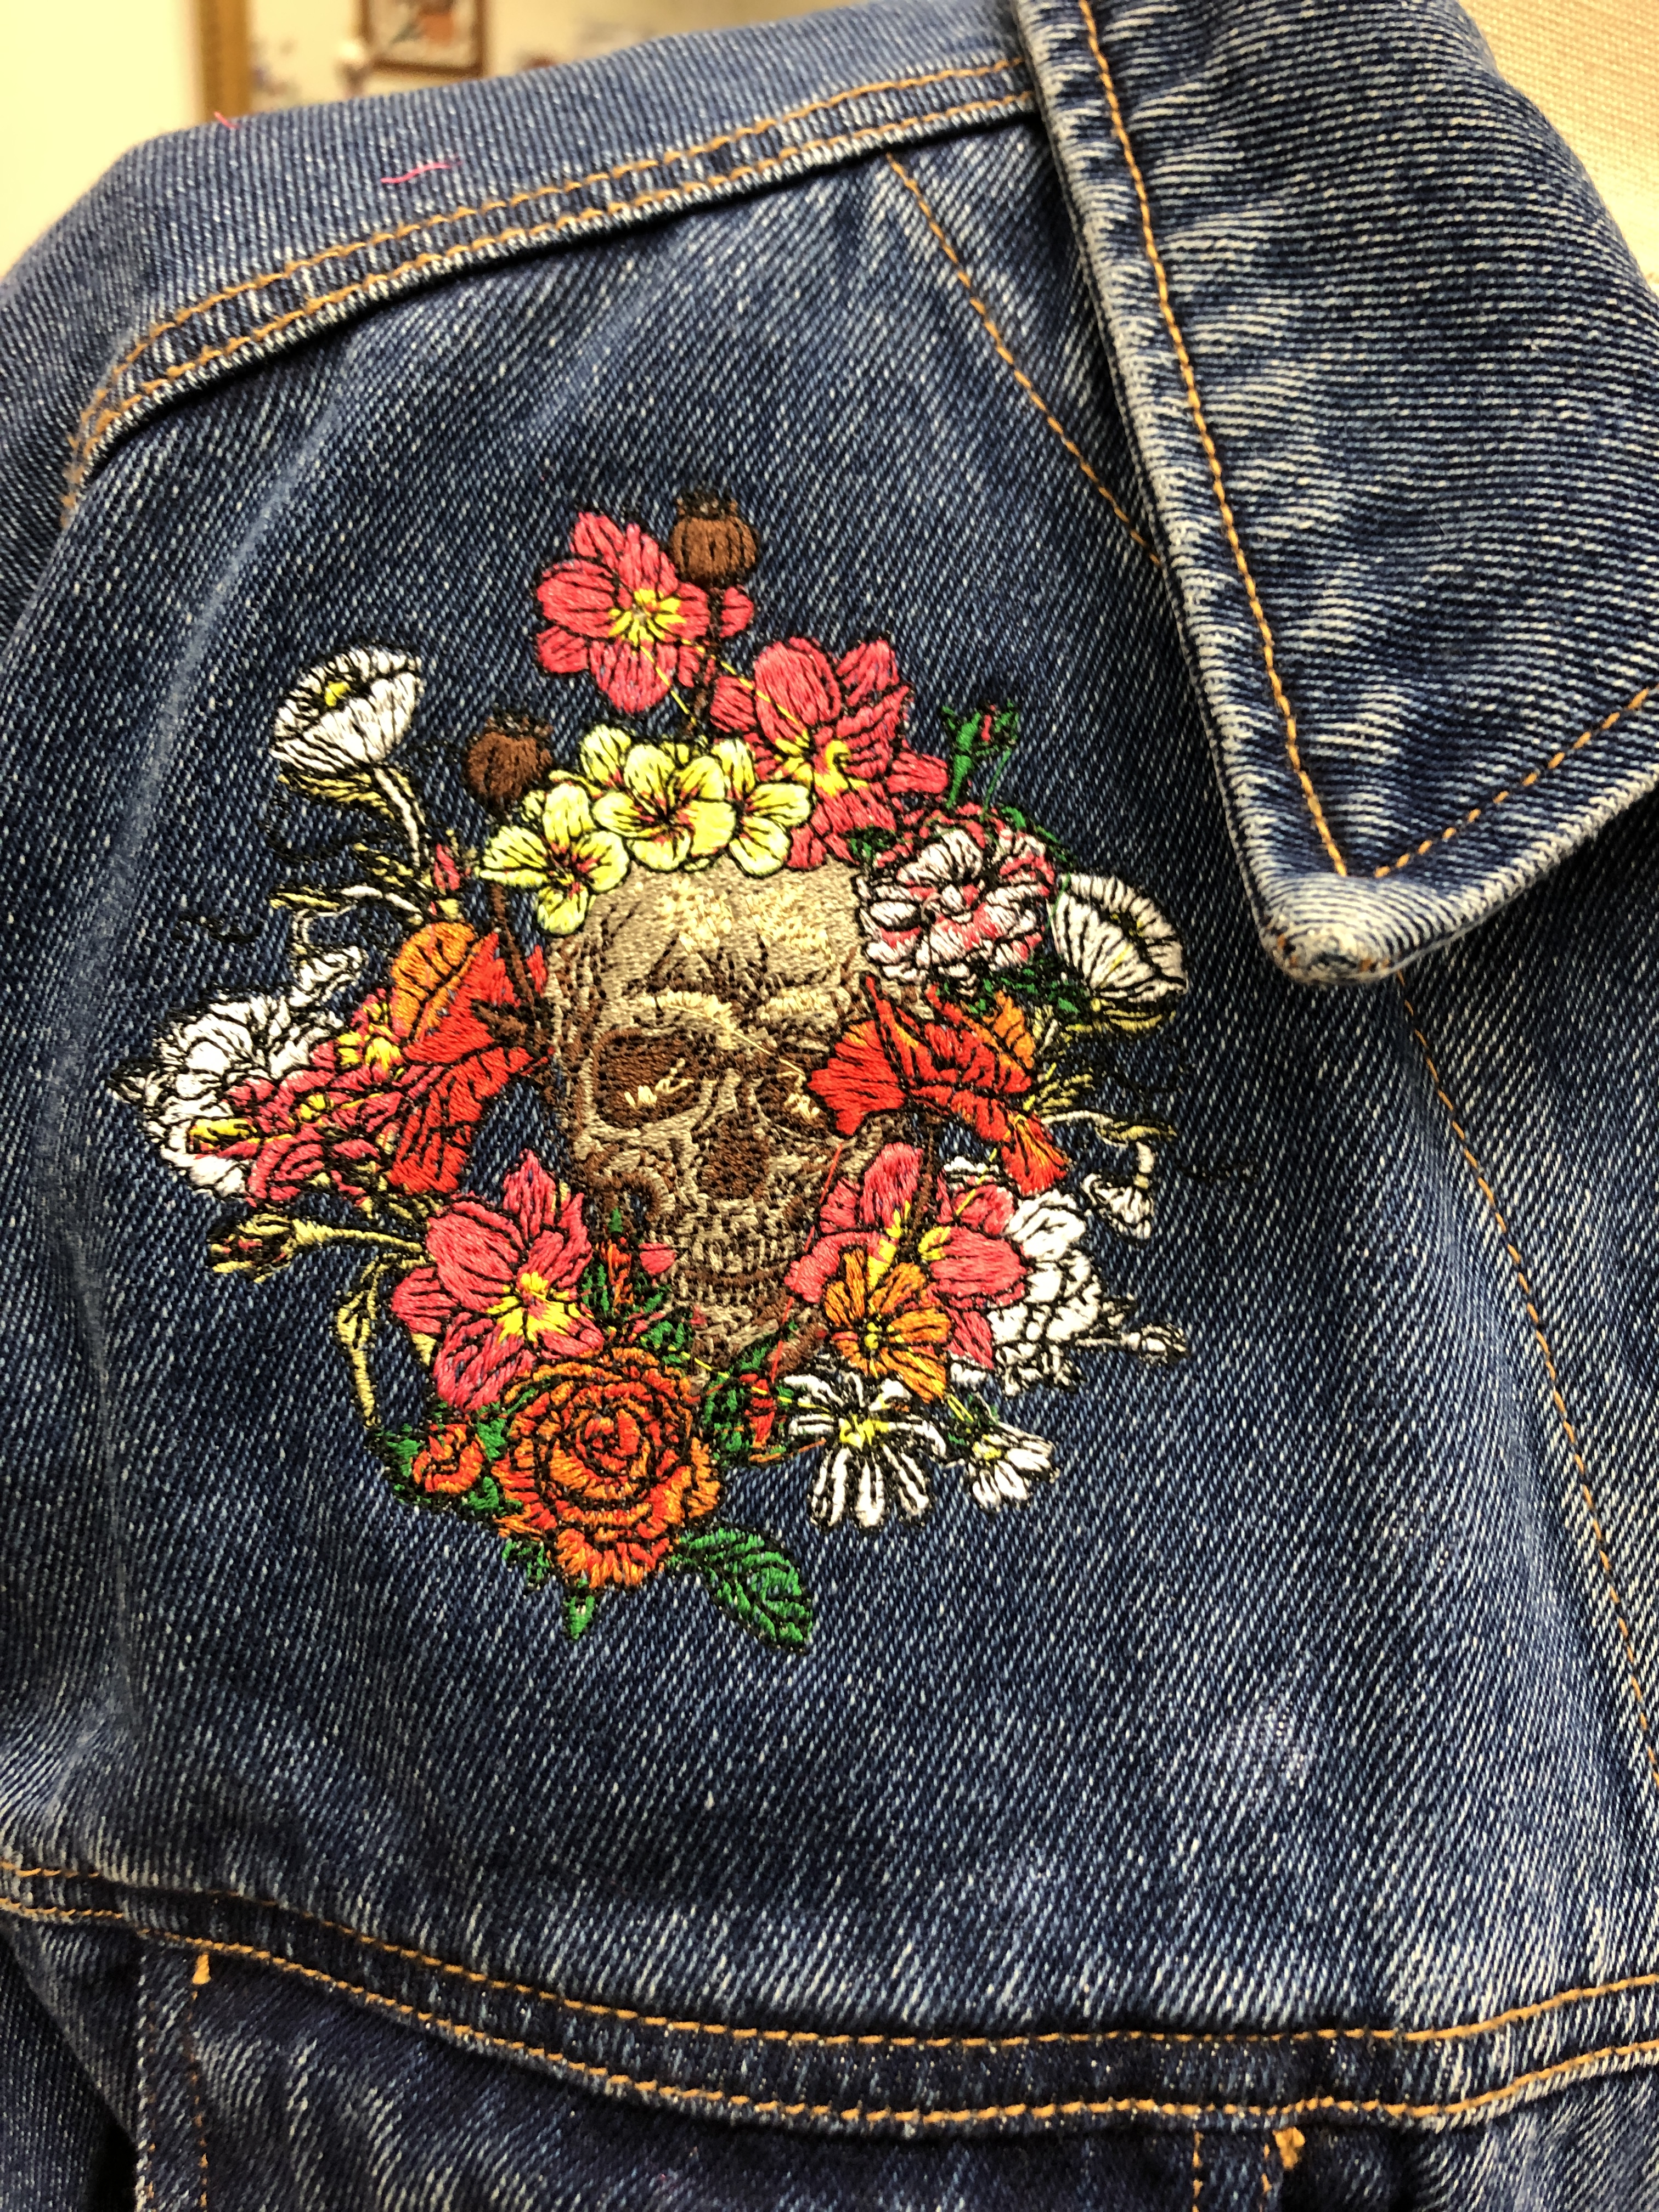 Embroidered Floral Skull Denim Jacket – Sheda's Fashion